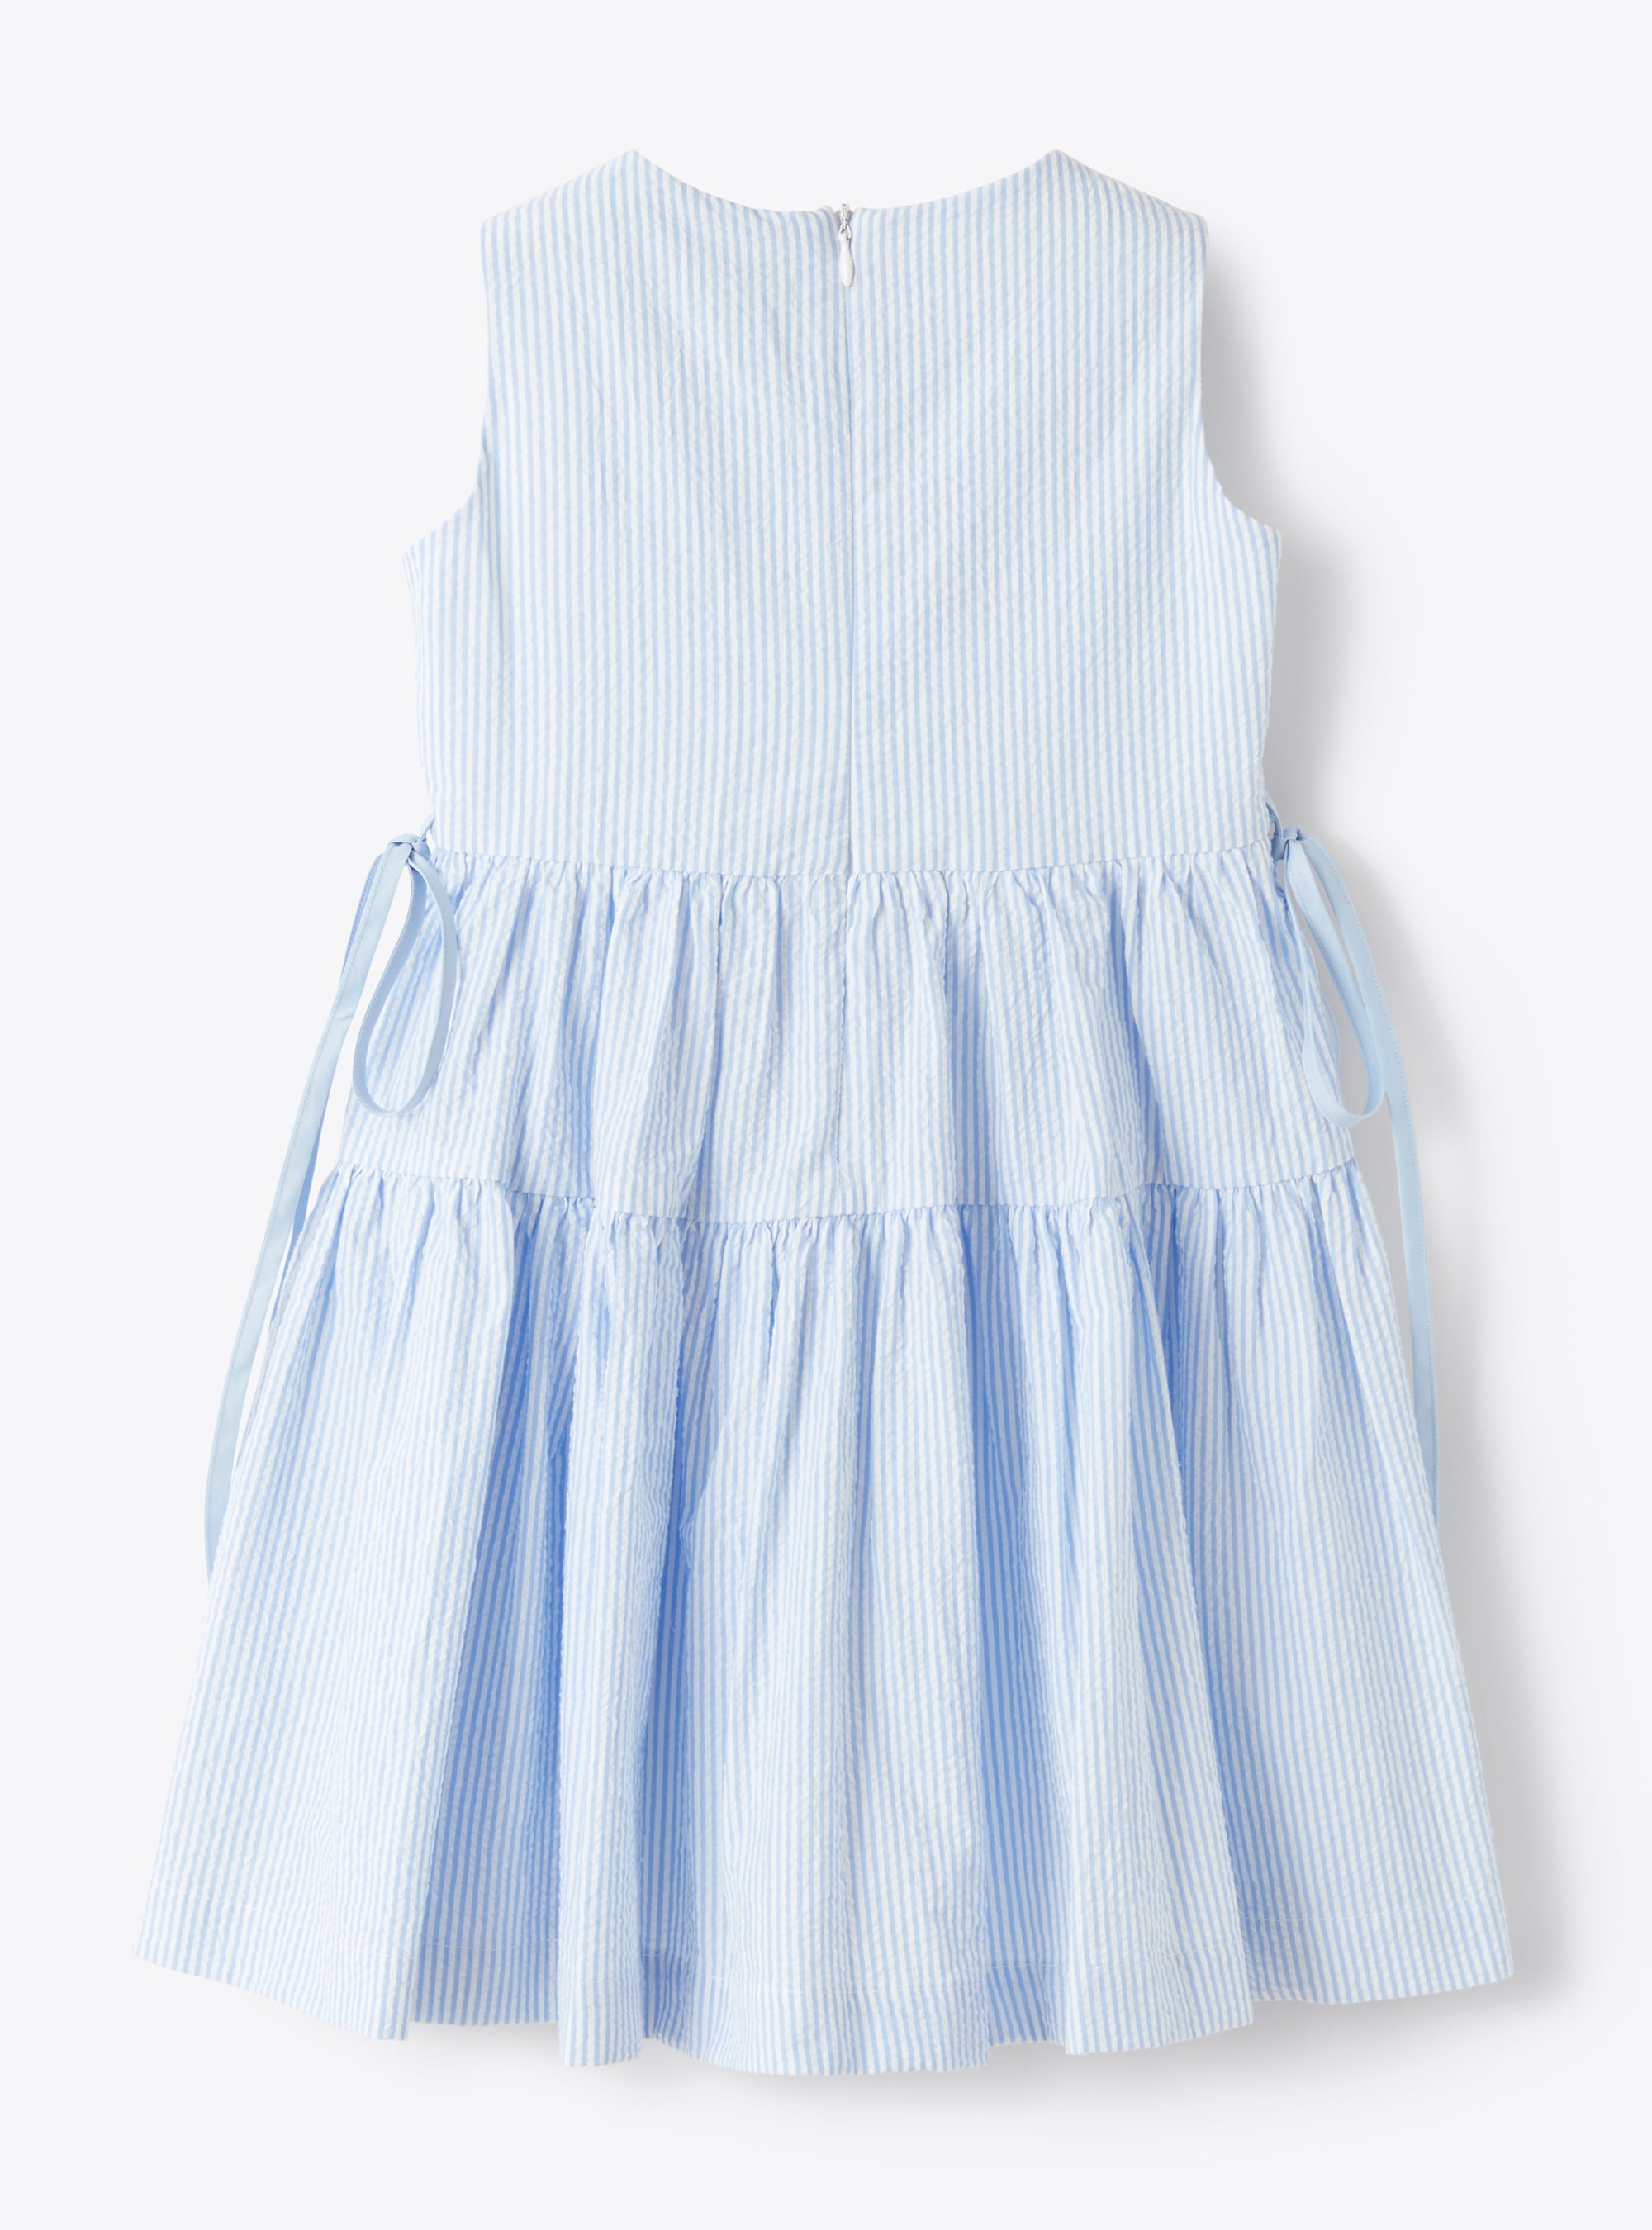 Sleeveless dress in striped seersucker - Light blue | Il Gufo